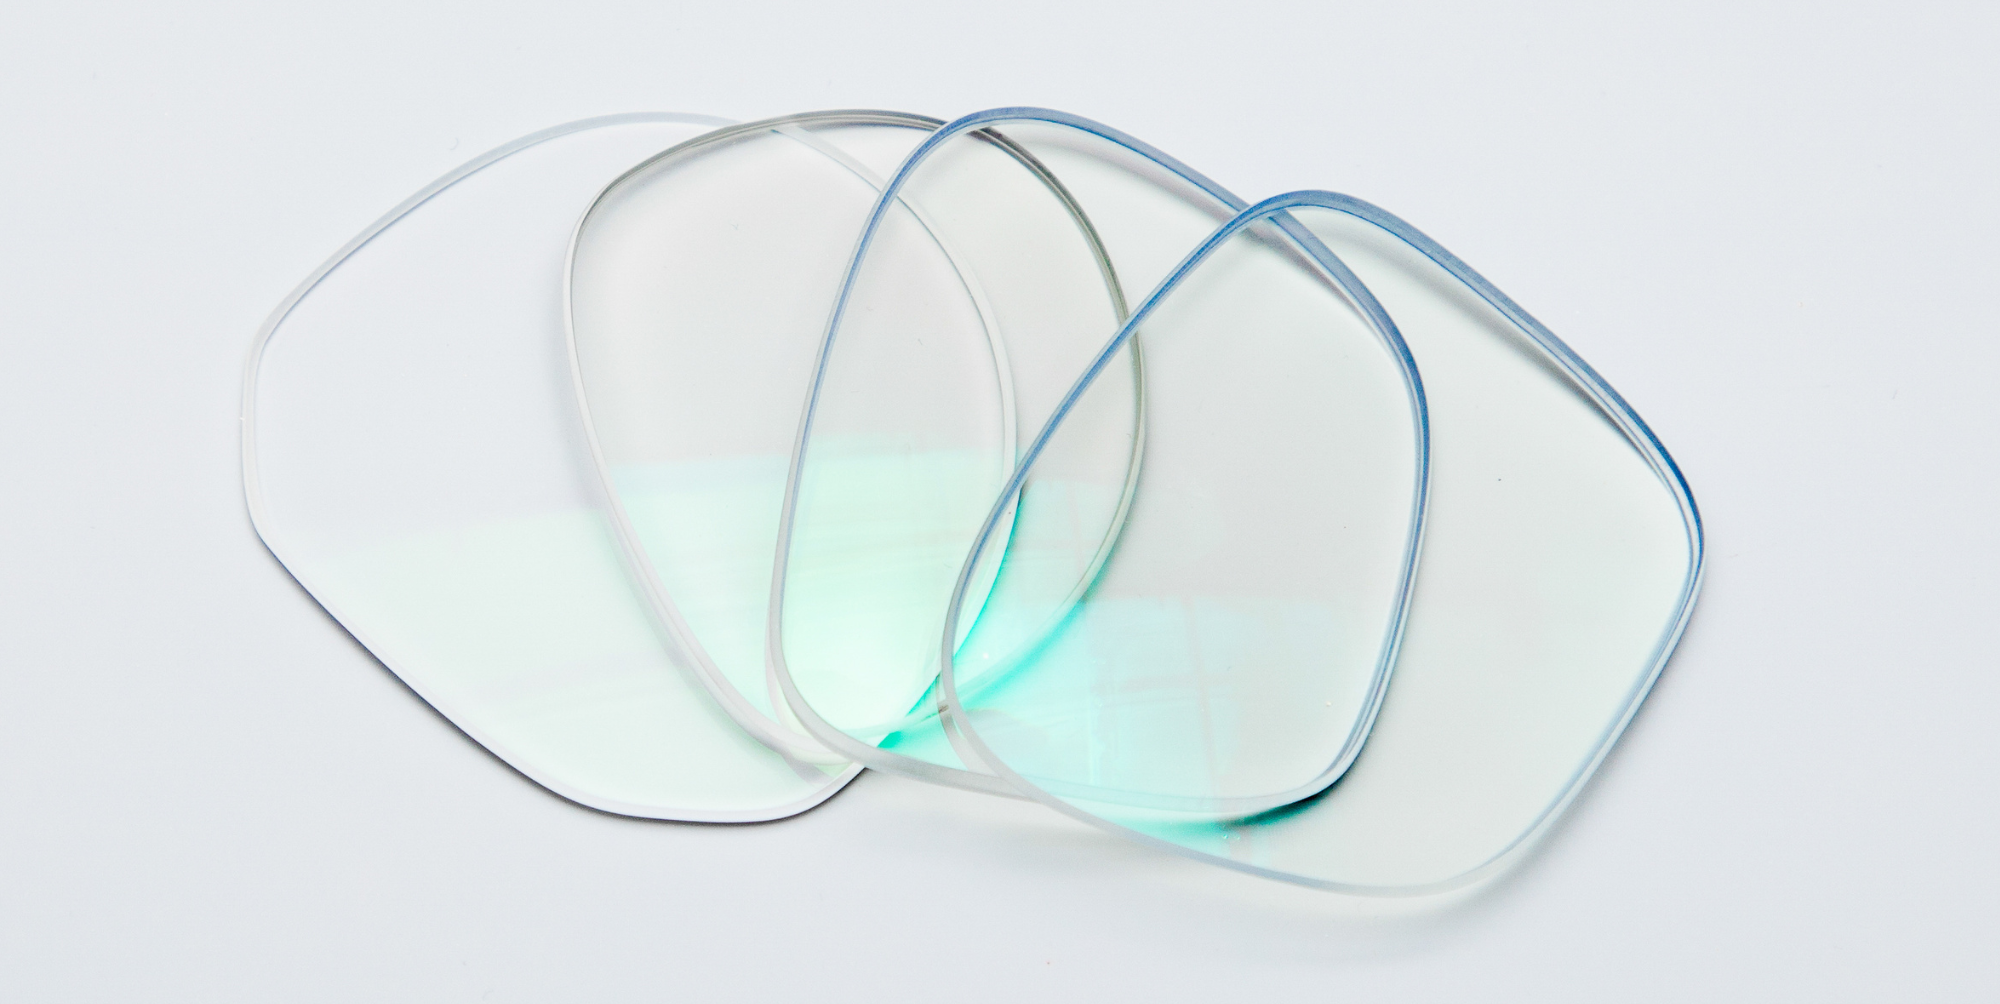 four glasses lenses on a white background